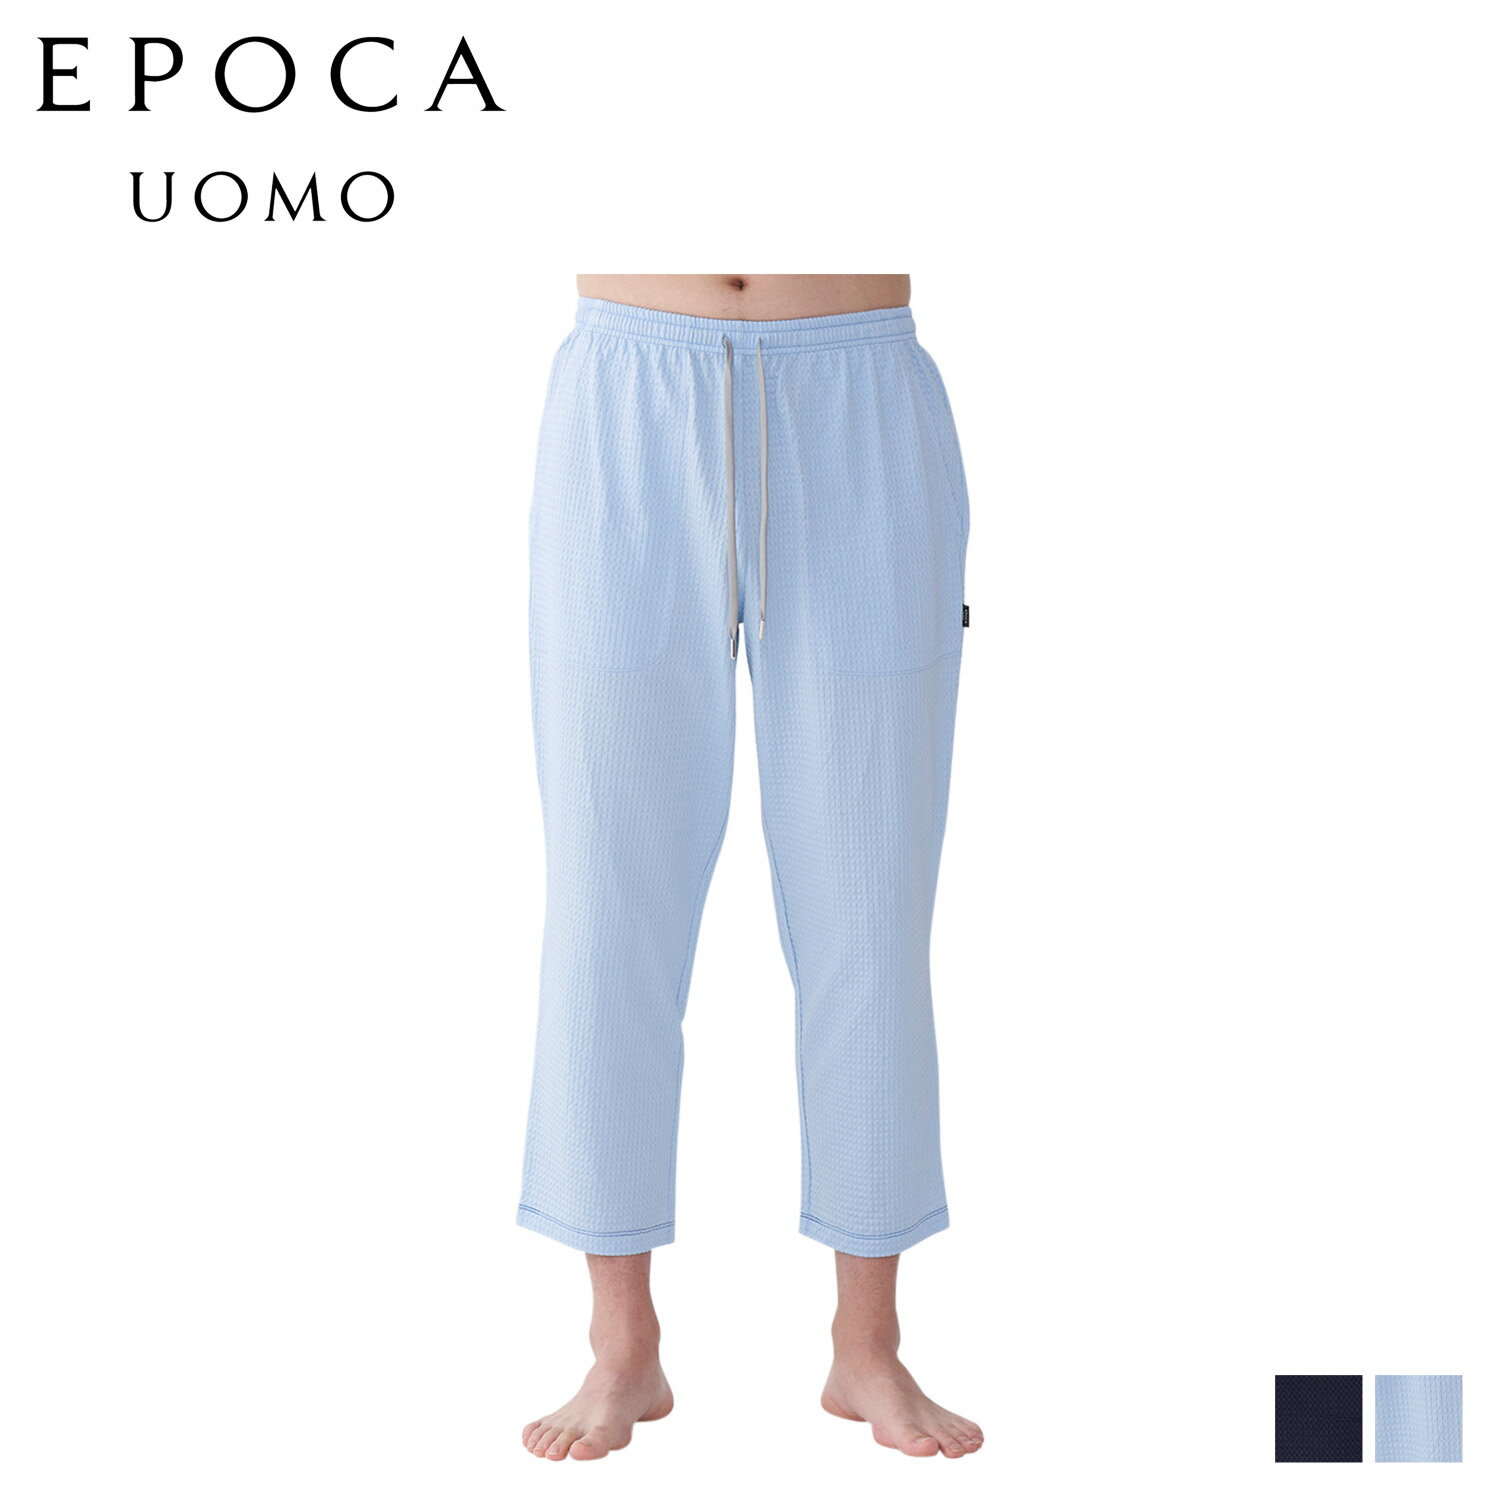 エポカ ウォモ EPOCA UOMO テーパードパンツ パジャマ ホームウェア ルームウェア メンズ TAPERED PANTS ネイビー ブルー 0398-77